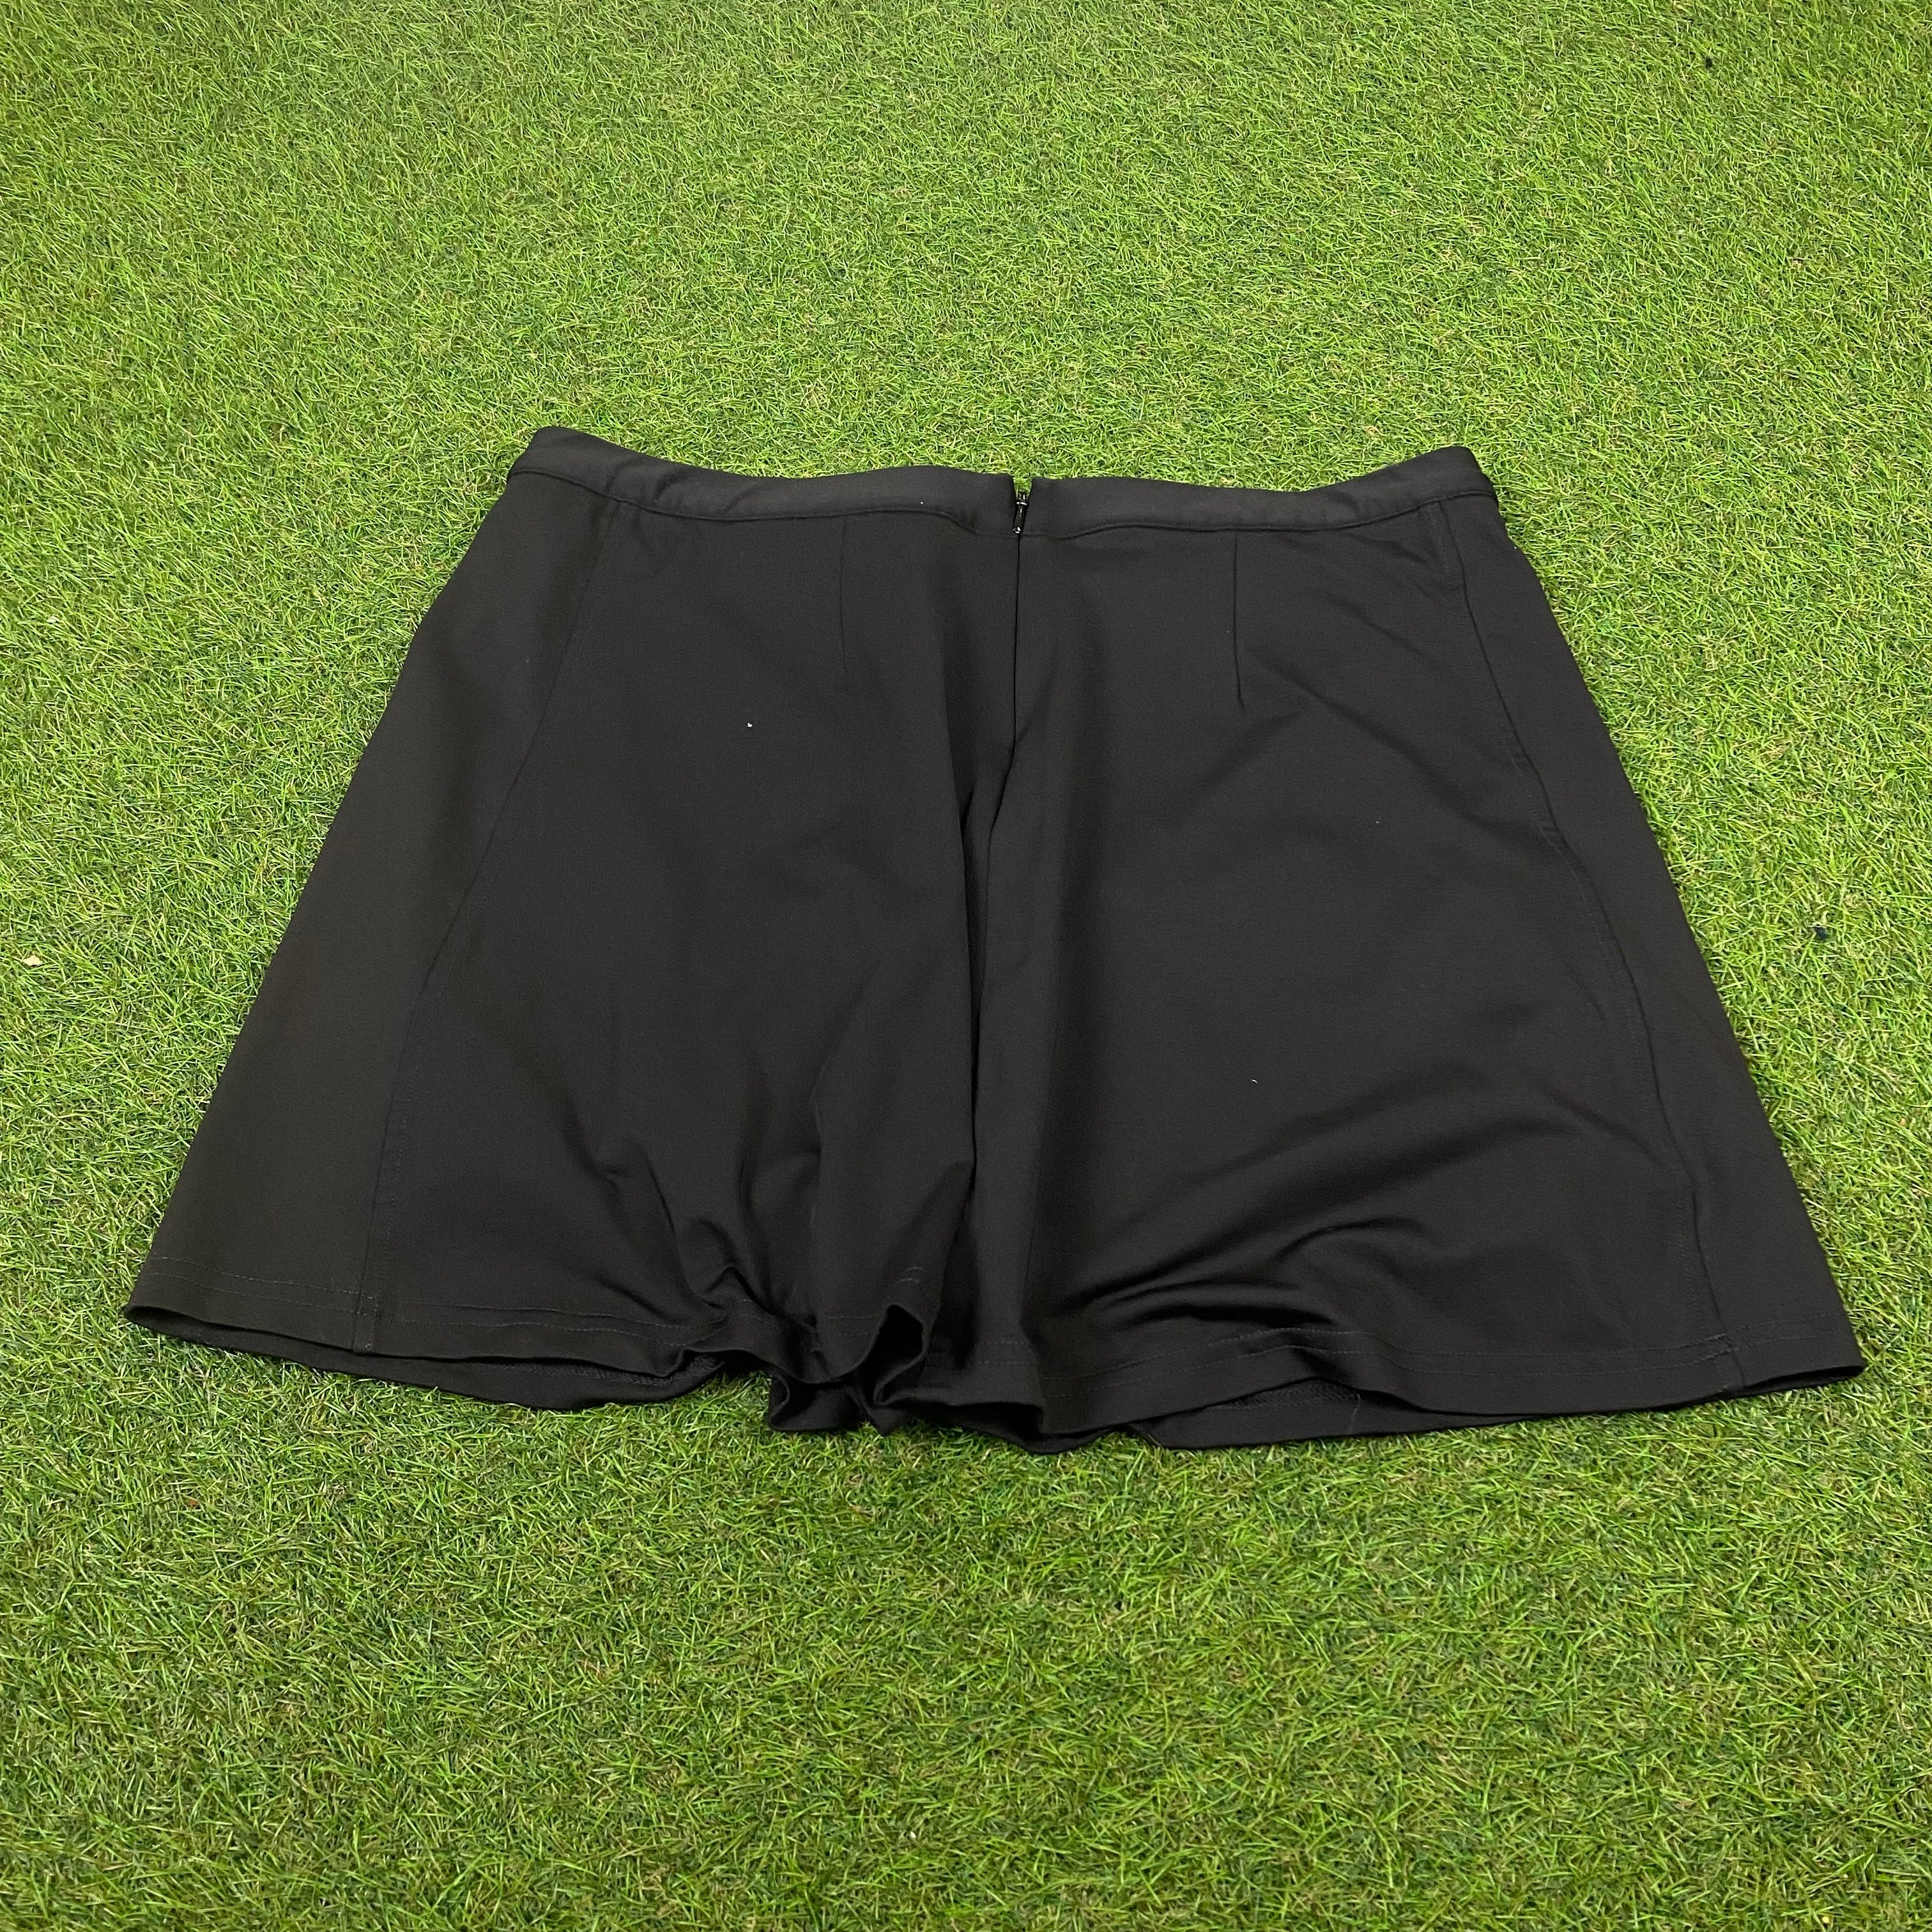 Erima Tennis Skirt Skort Black Large 14/16